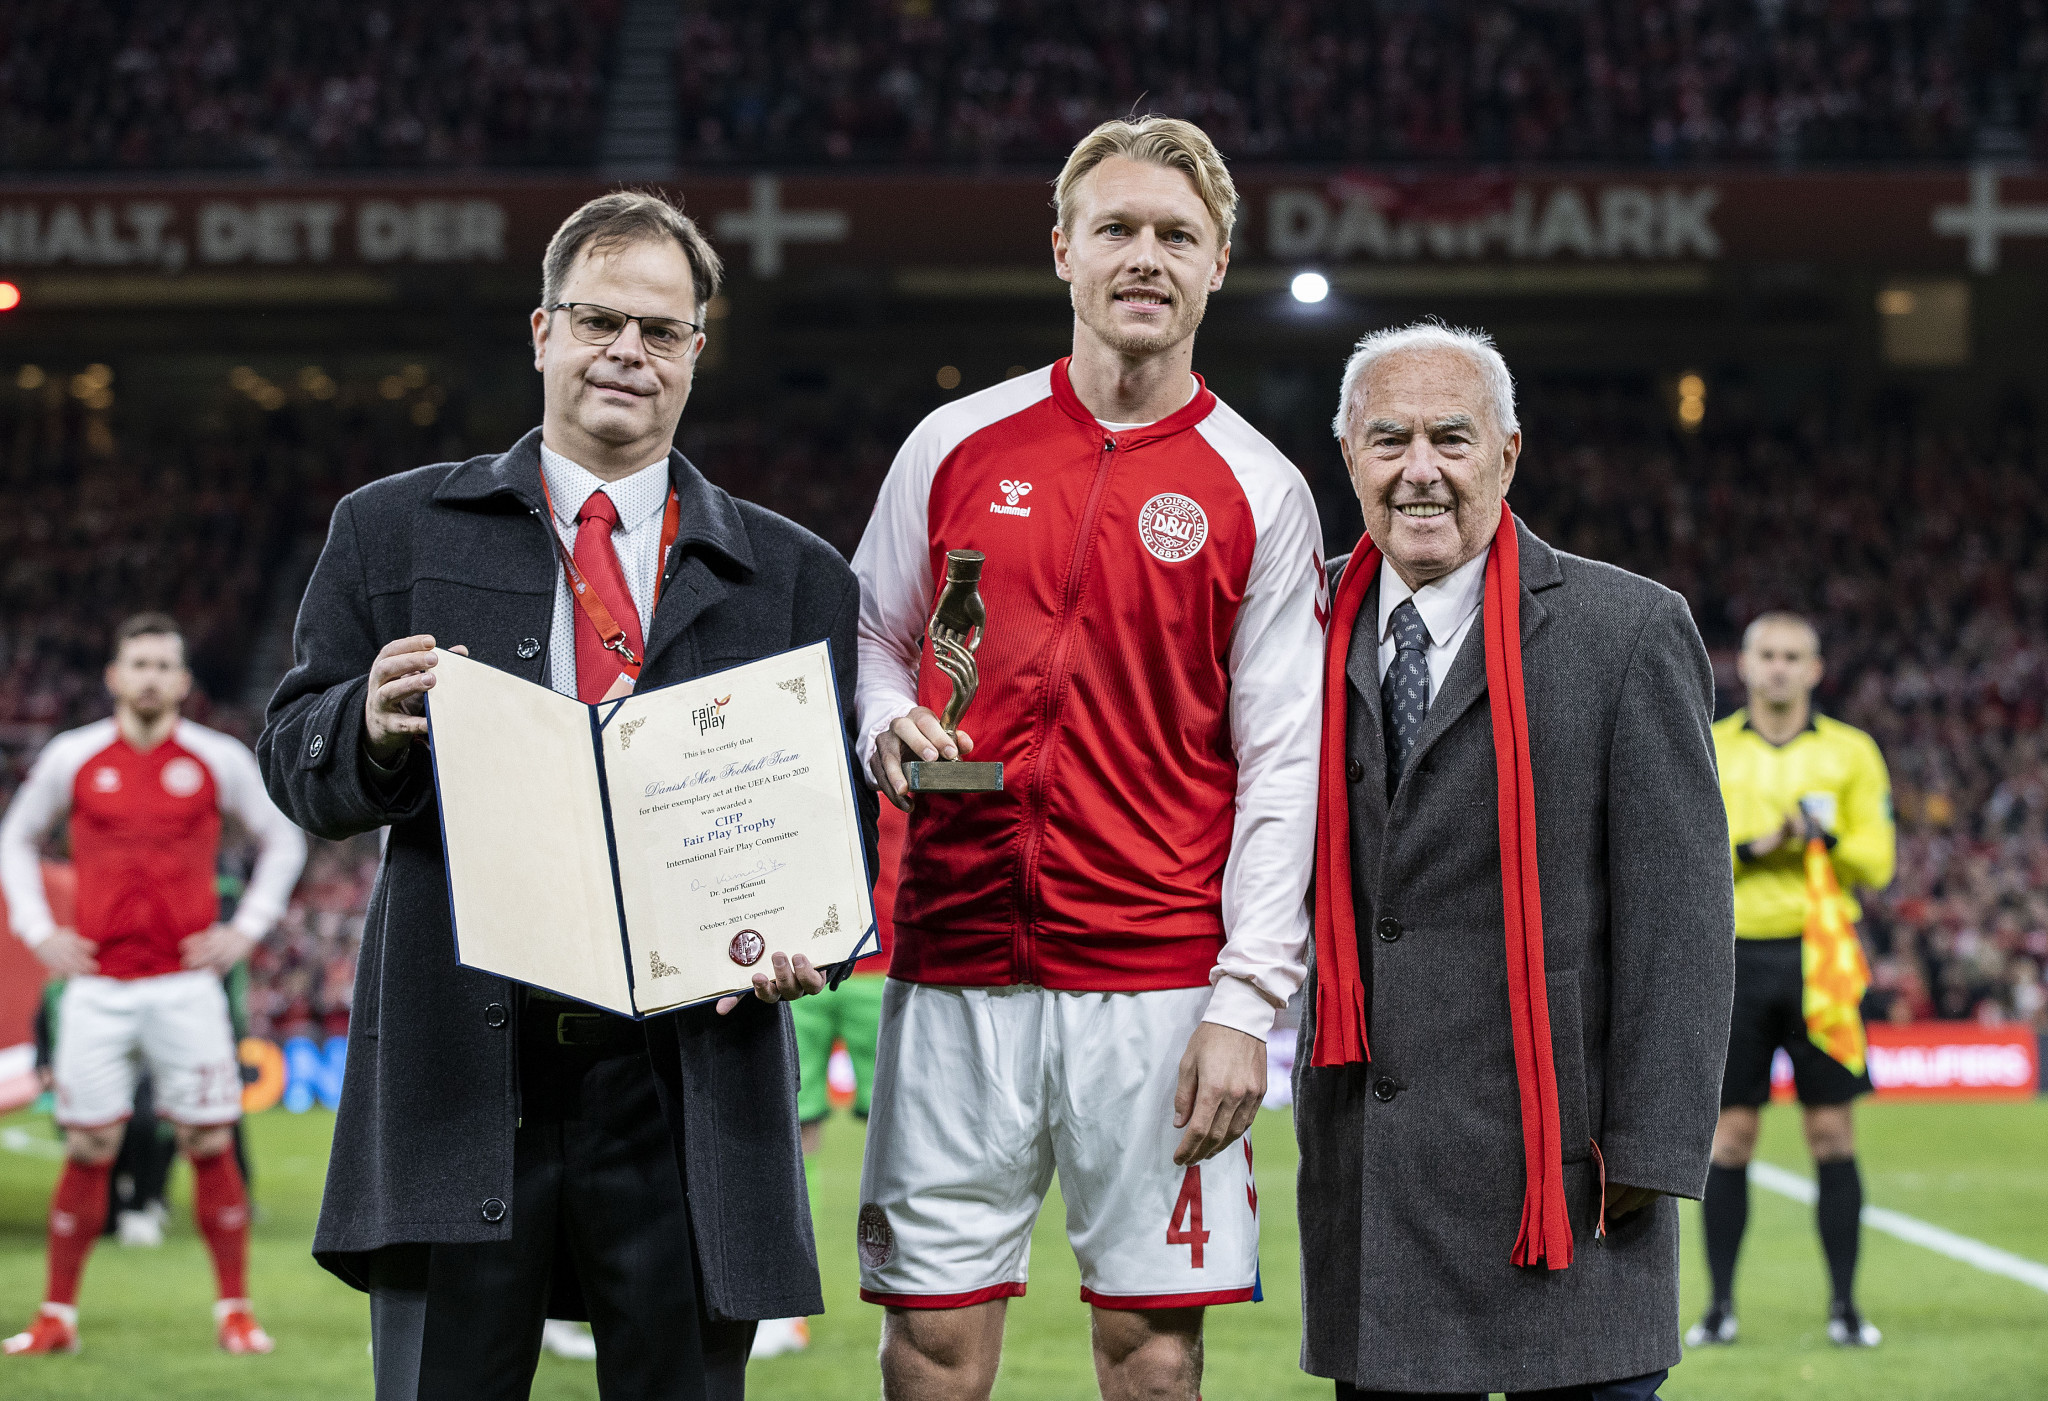 Denmark captain Simon Kjær received the award on behalf of the team ©CIFP